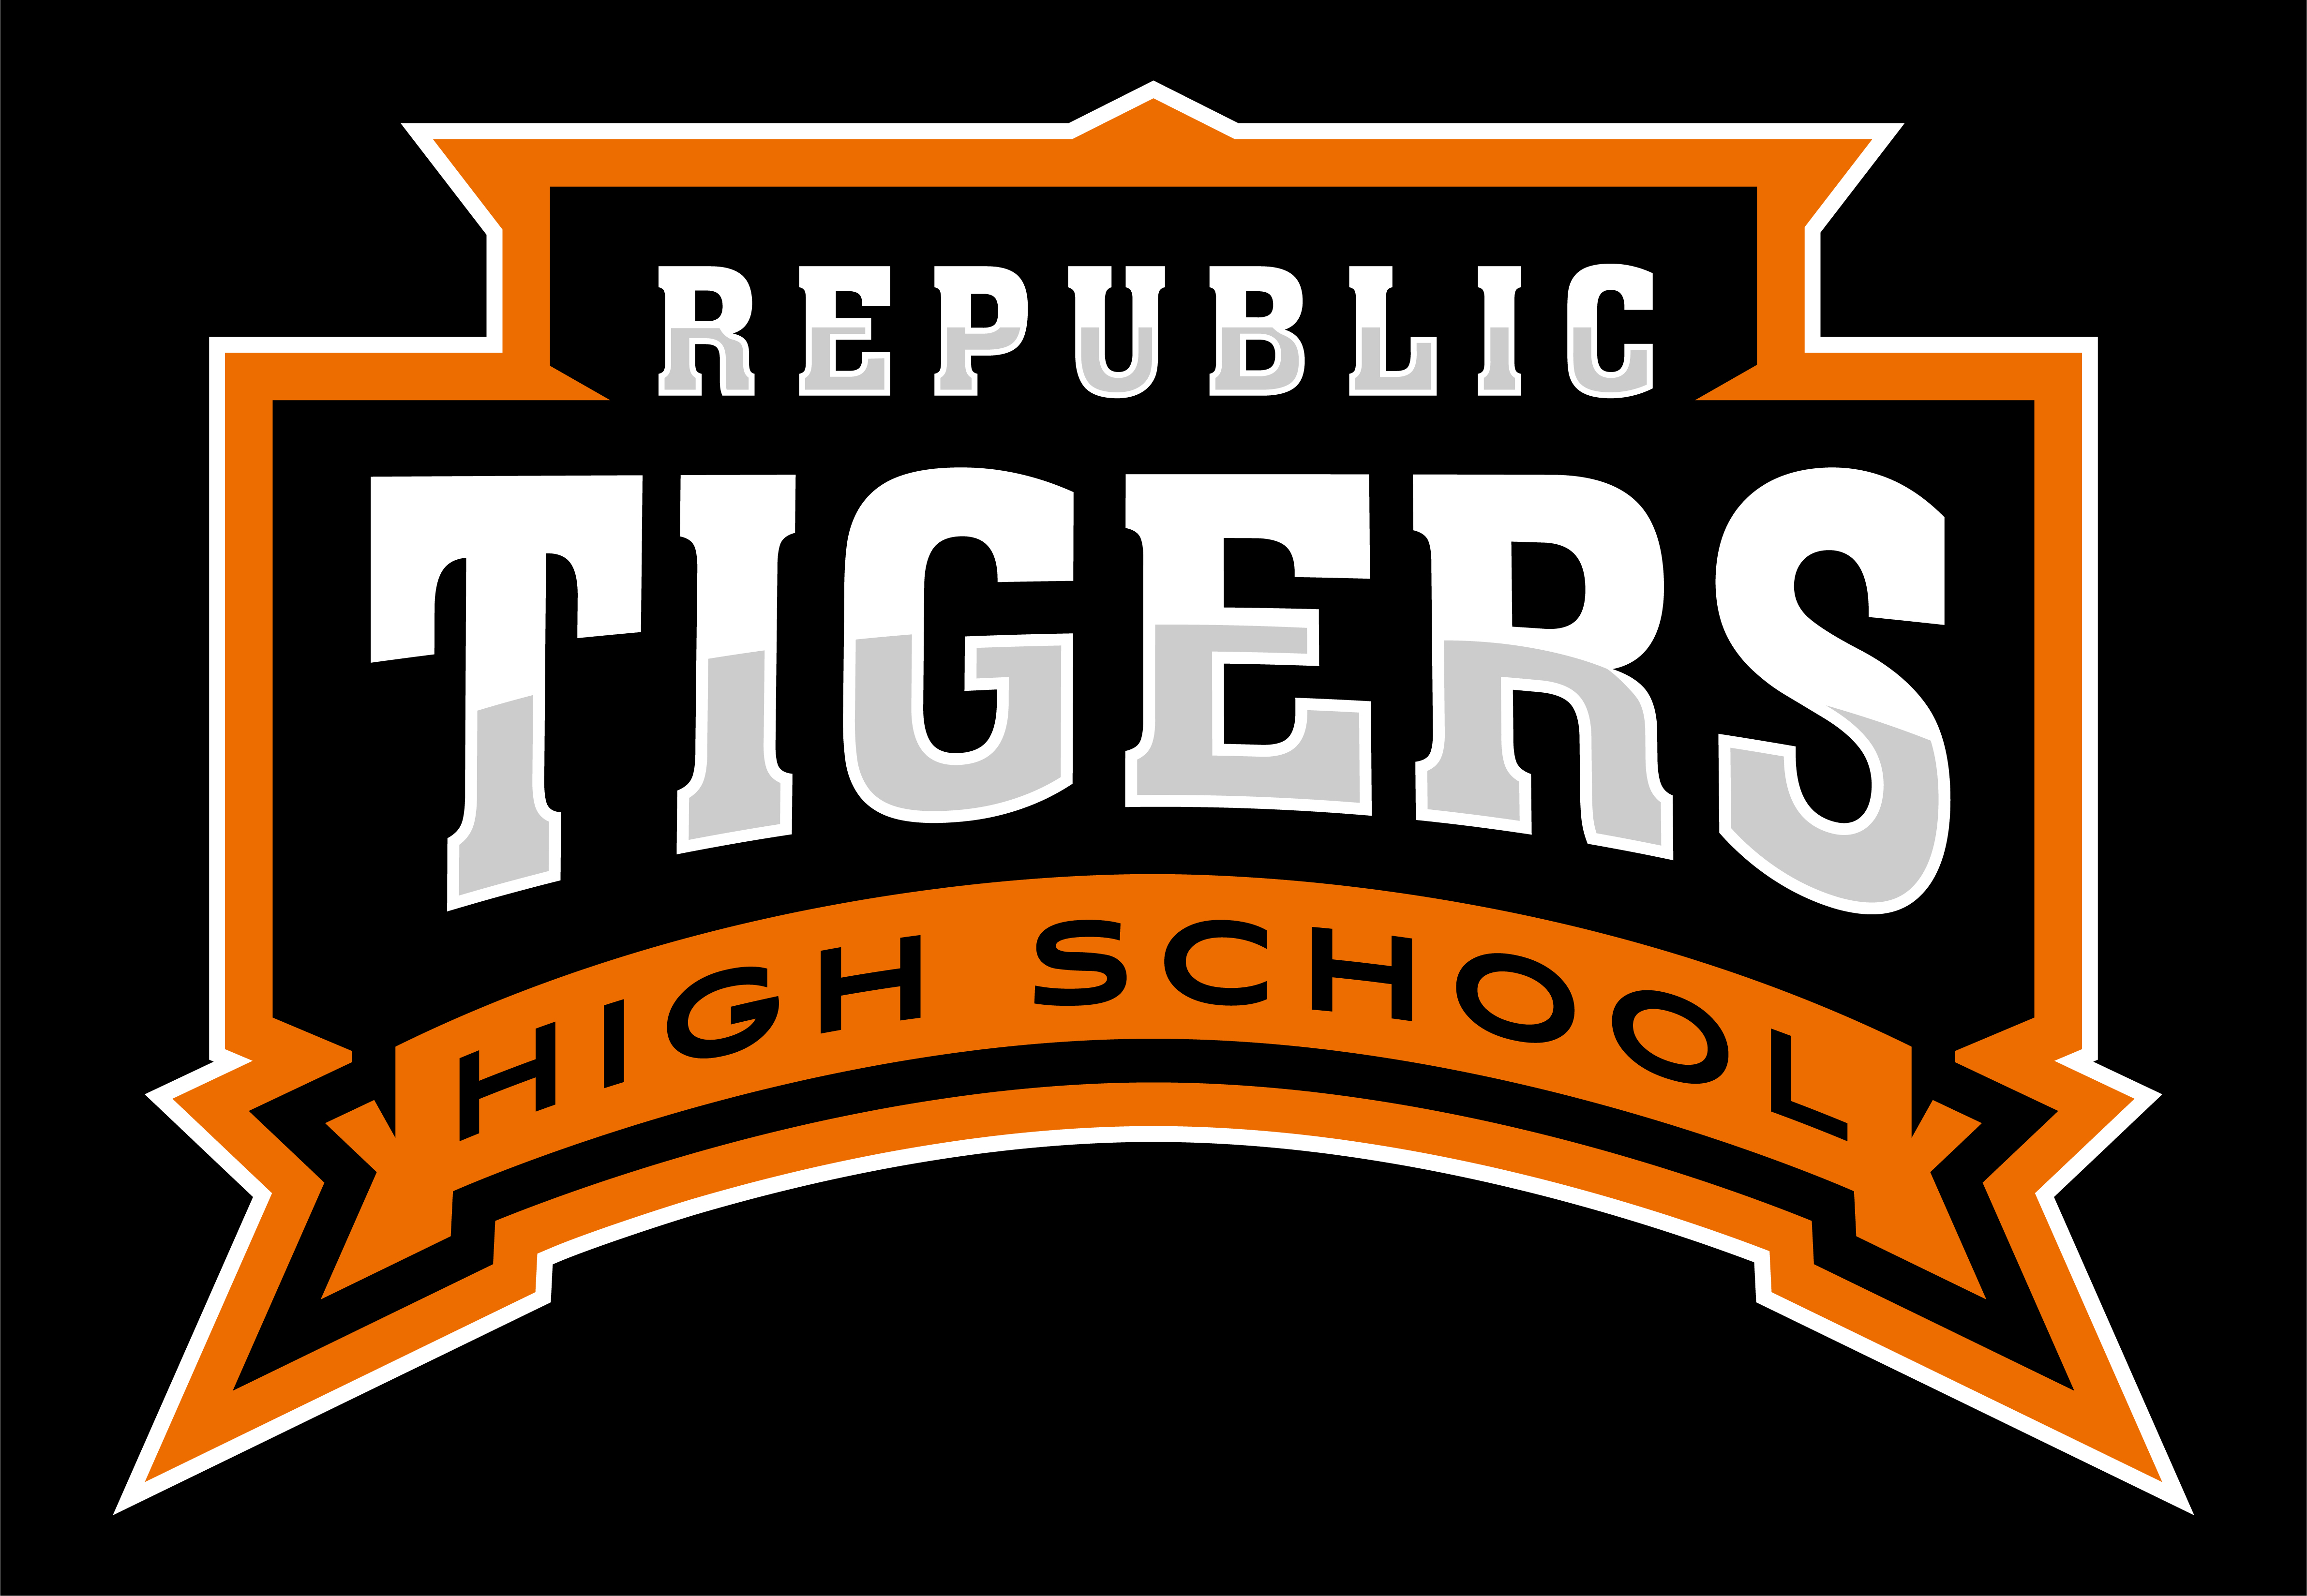 Republic Tigers No Mascot